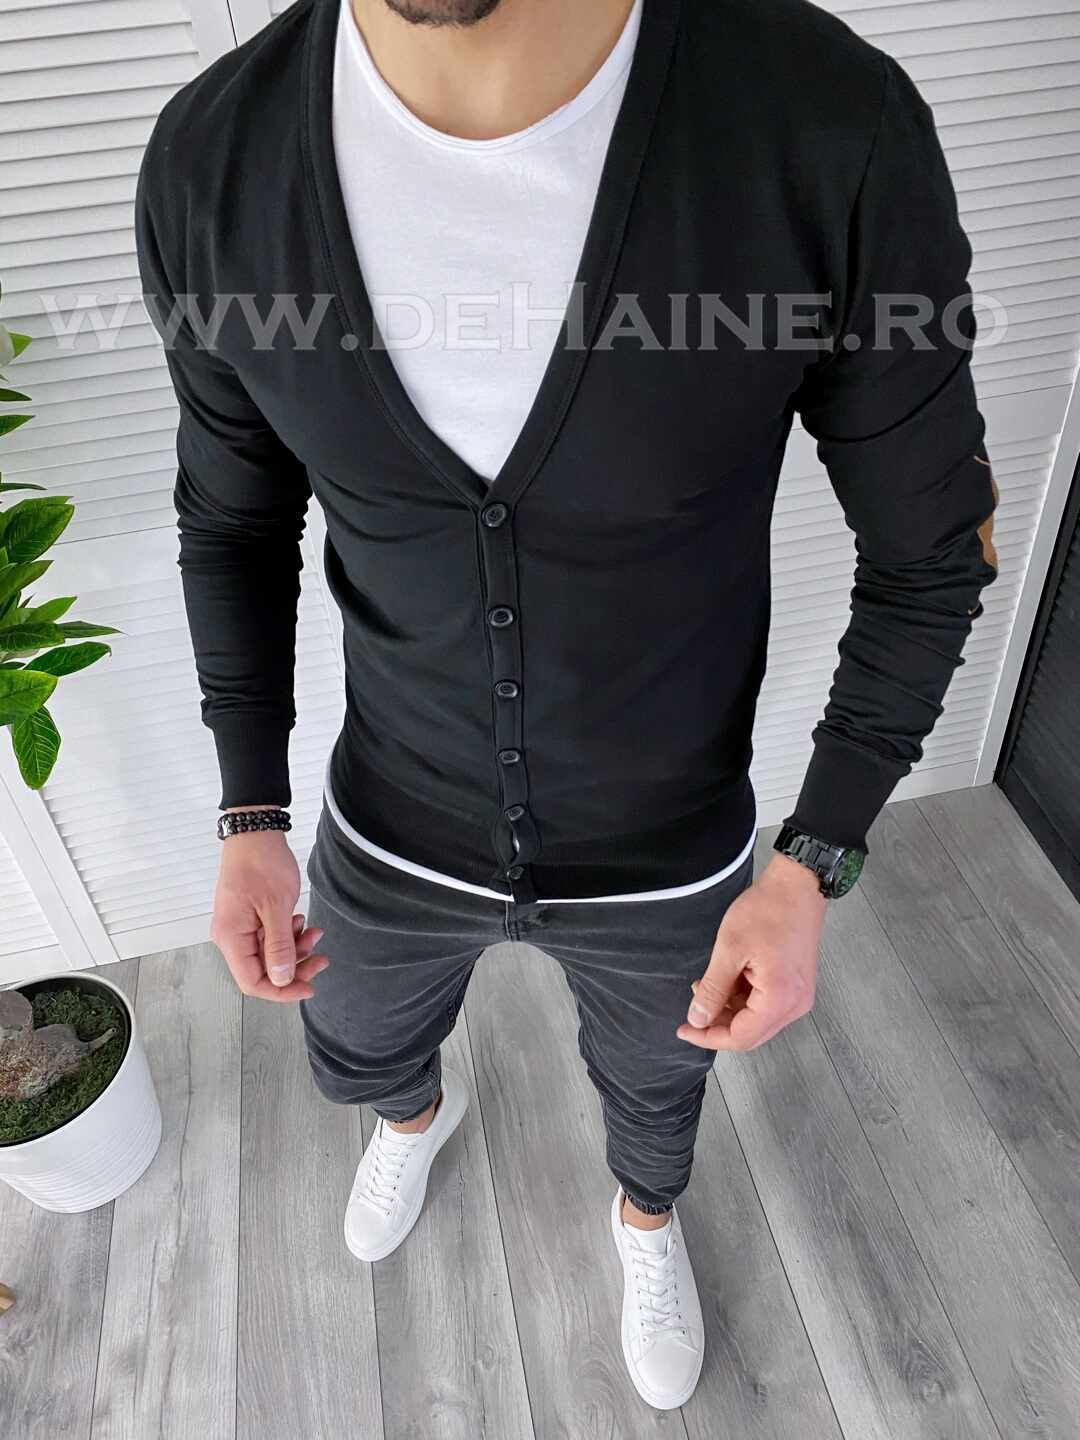 Bluza barbati neagra slim fit A6270 S